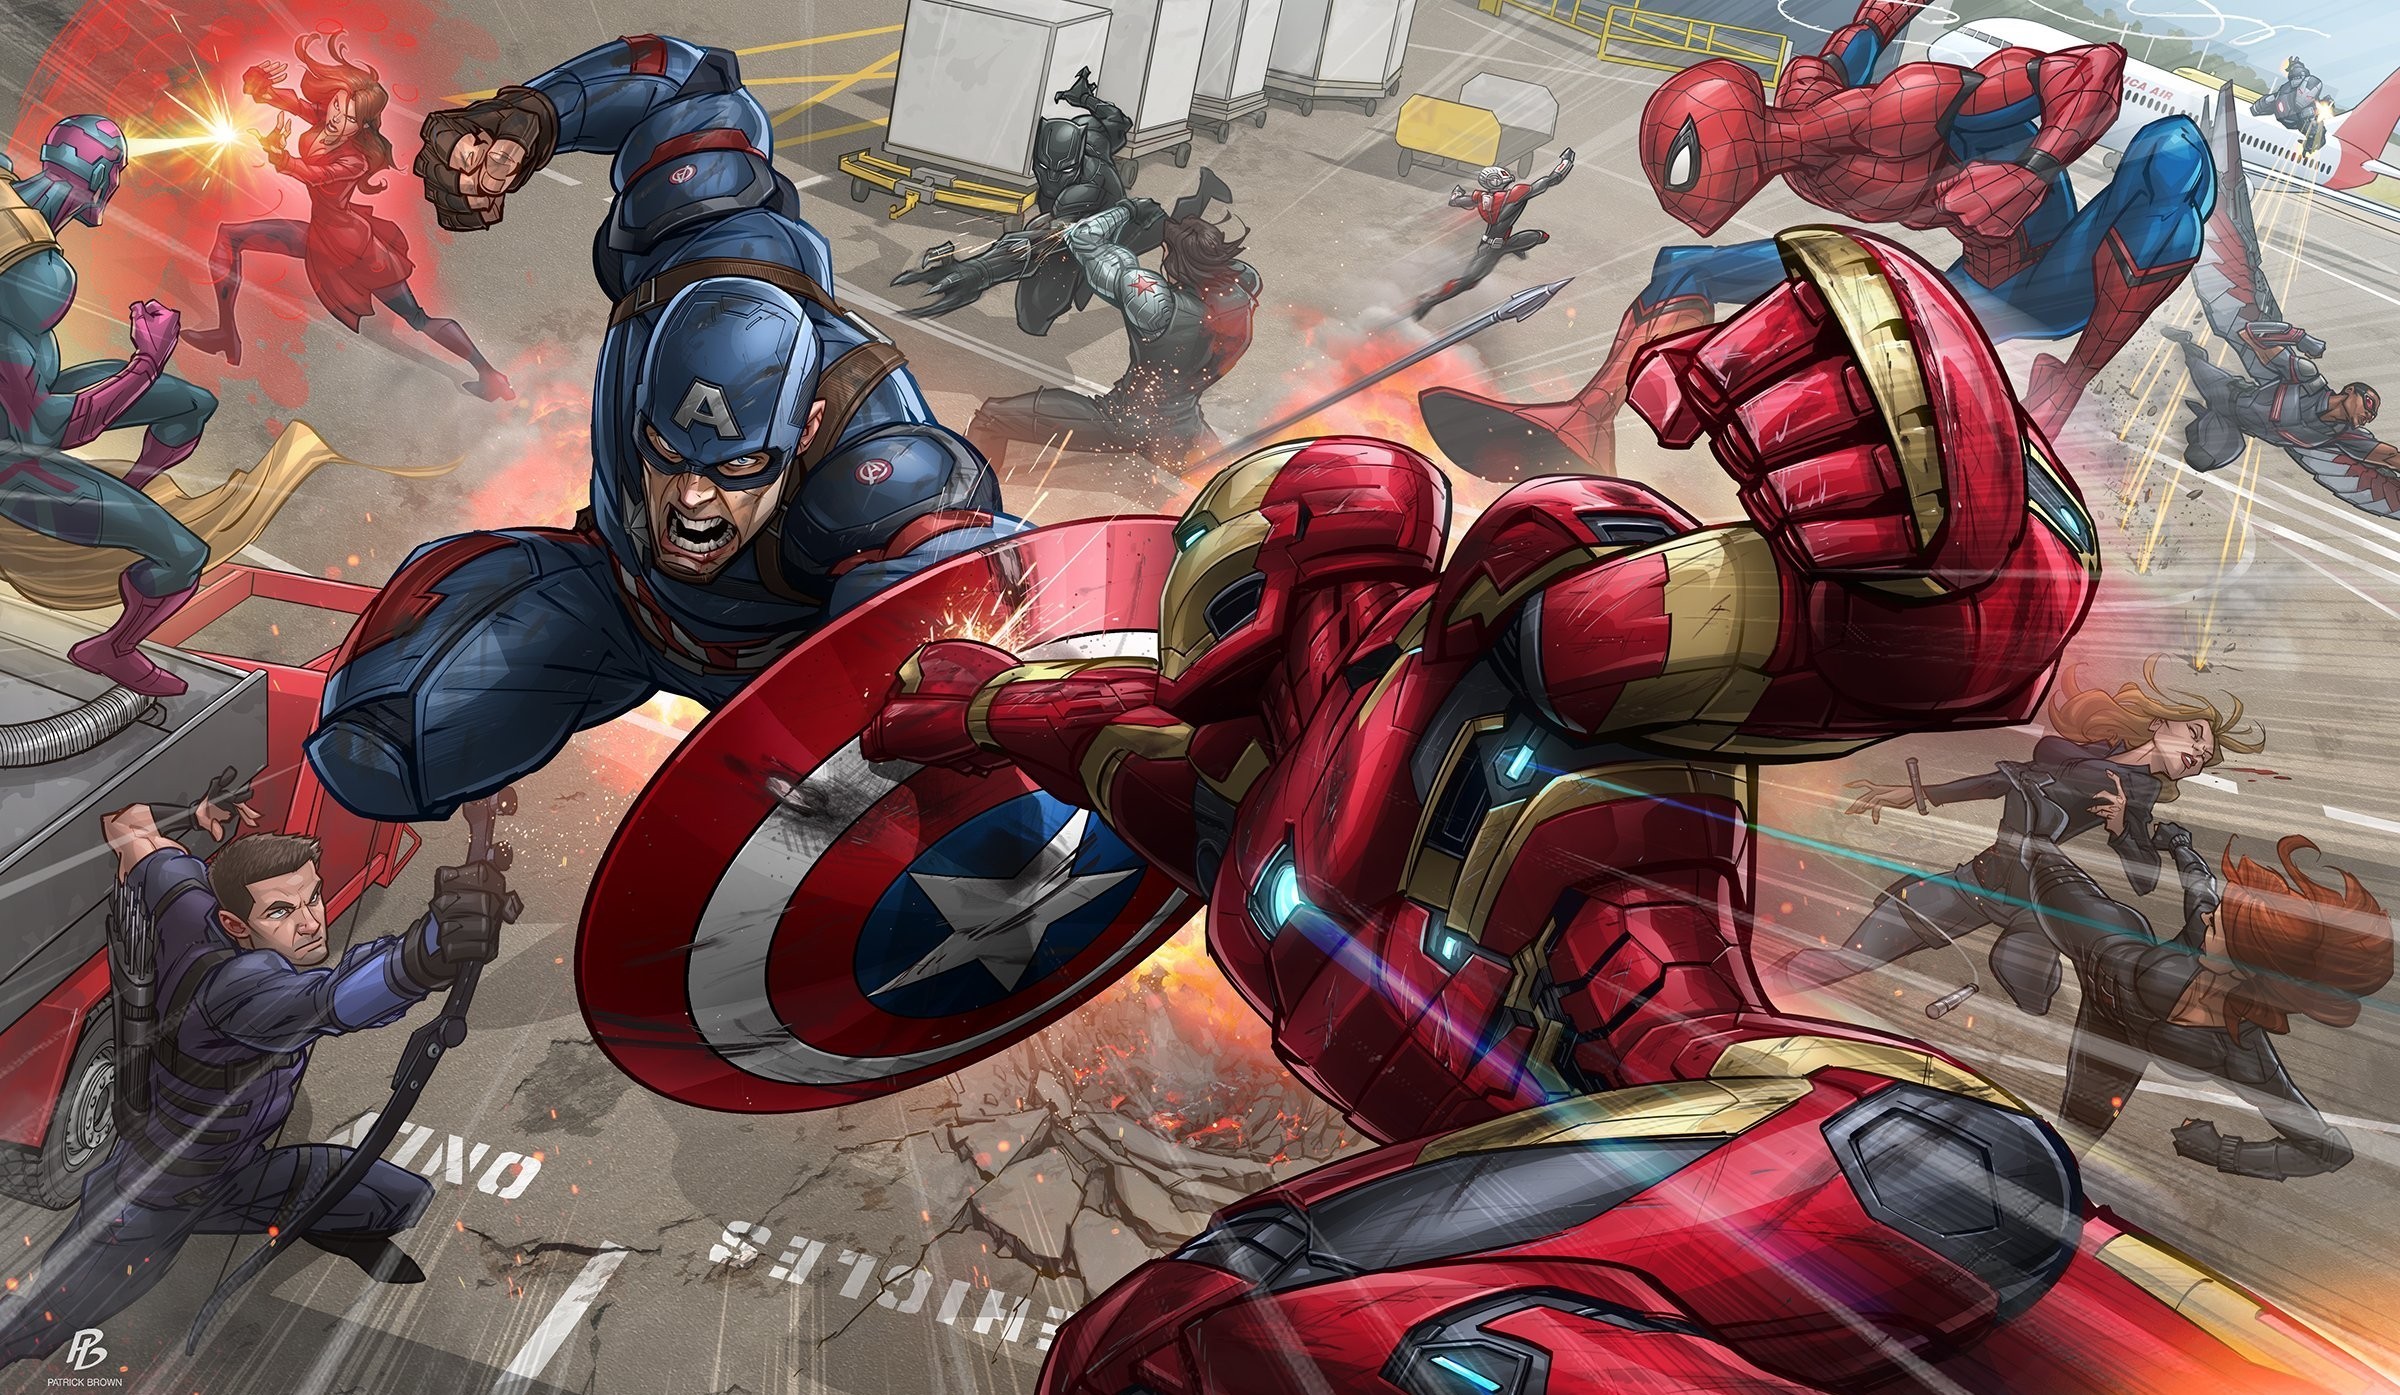 Fond d'ecran Iron Man vs Captain America Comics